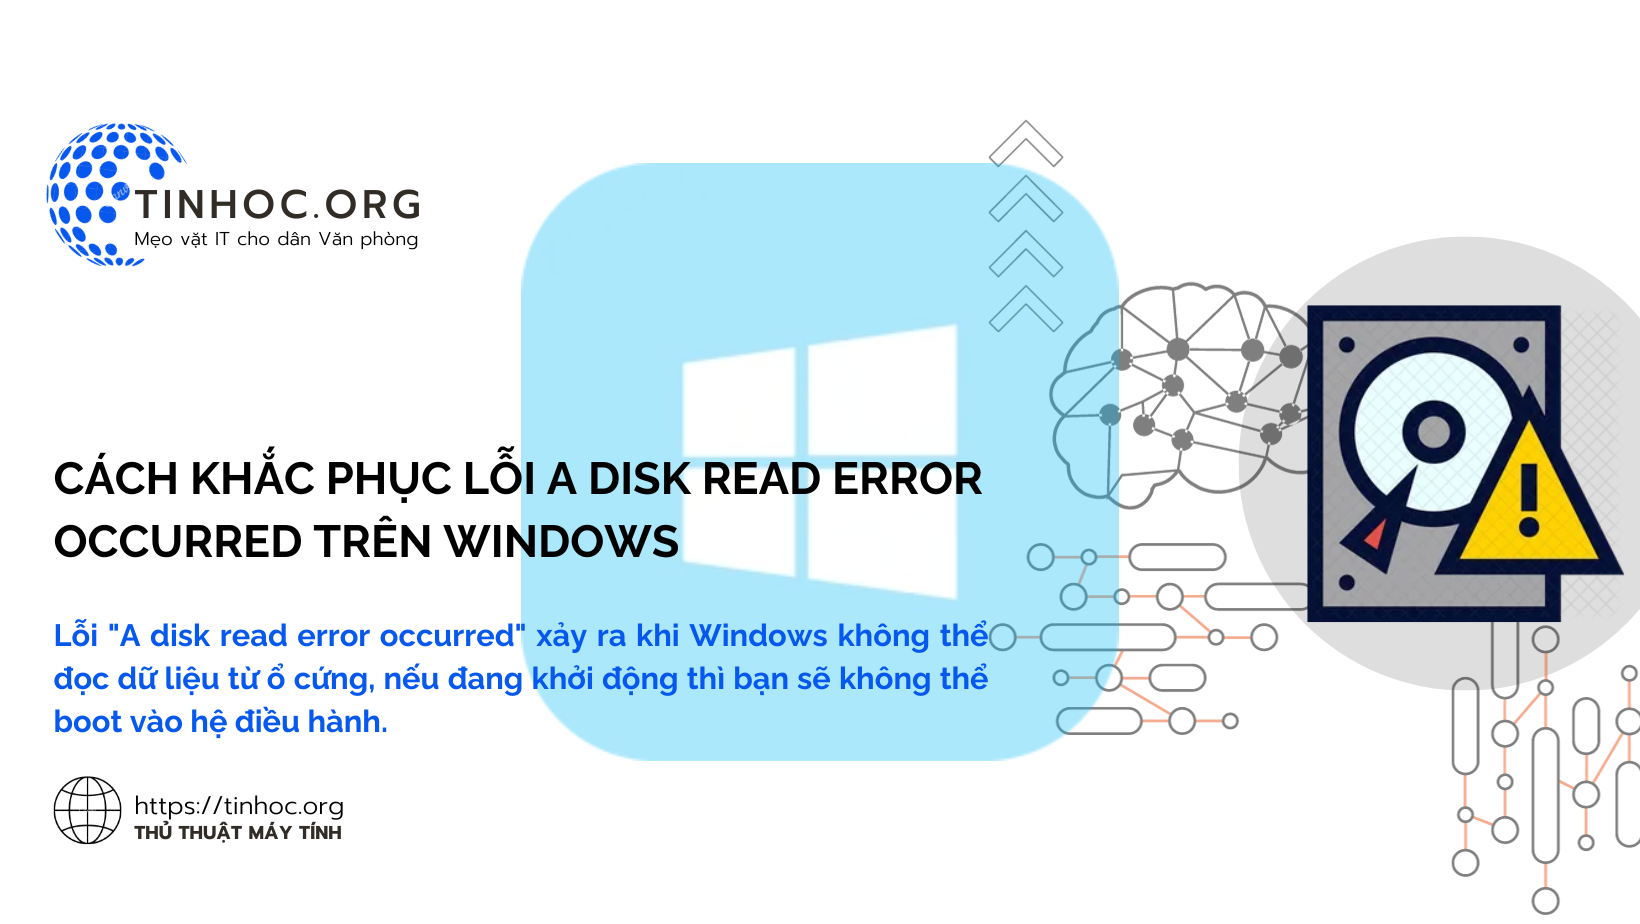 Cách khắc phục lỗi A disk read error occurred trên Windows